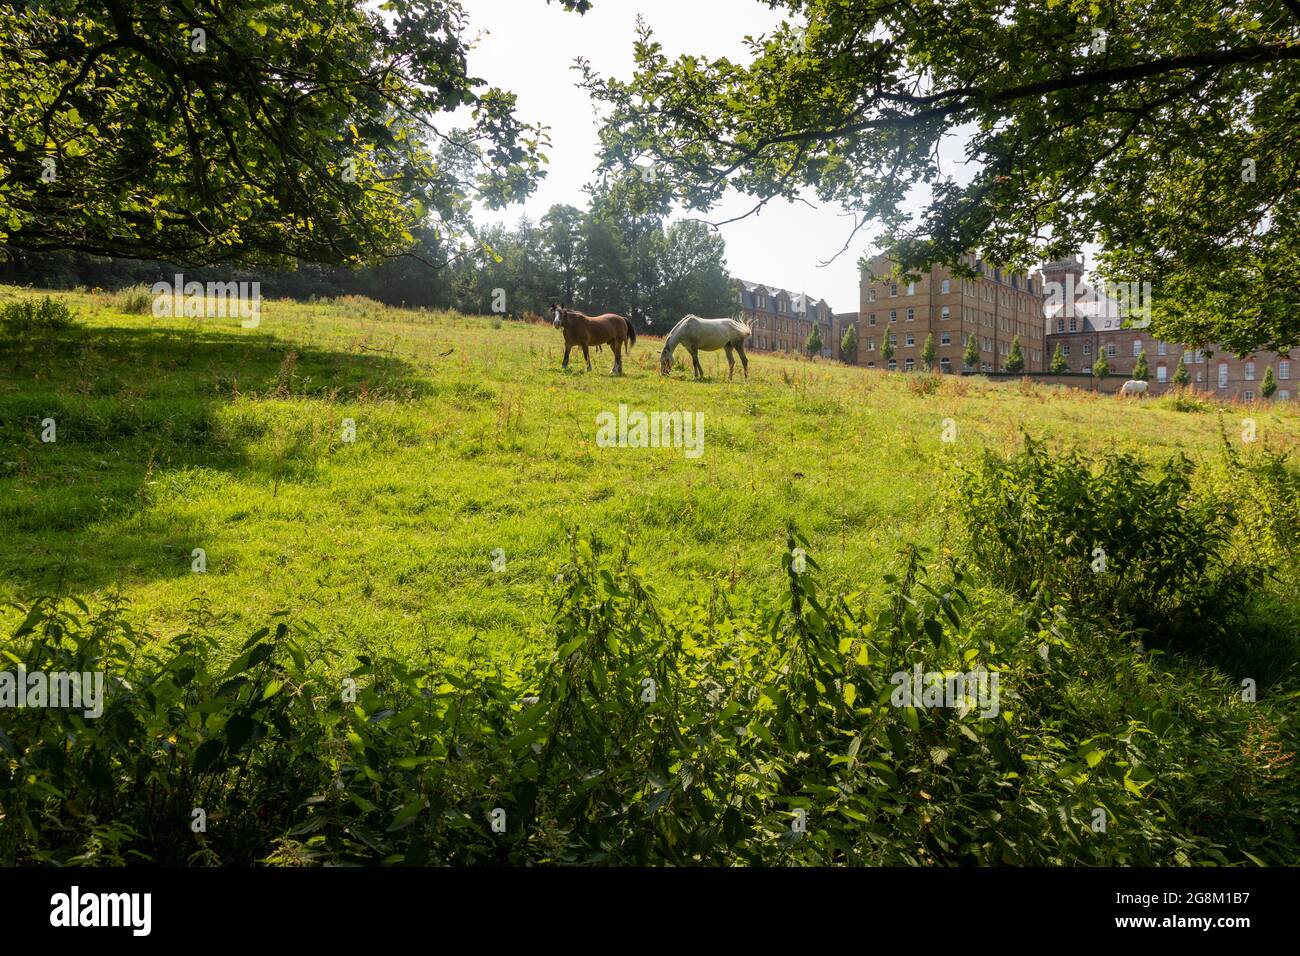 Pferde grasen auf einem Feld am Rande einer Wohnanlage, Mill Hill (St. Joseph's Gate), ein typisches Mill Hill s/cene Stockfoto